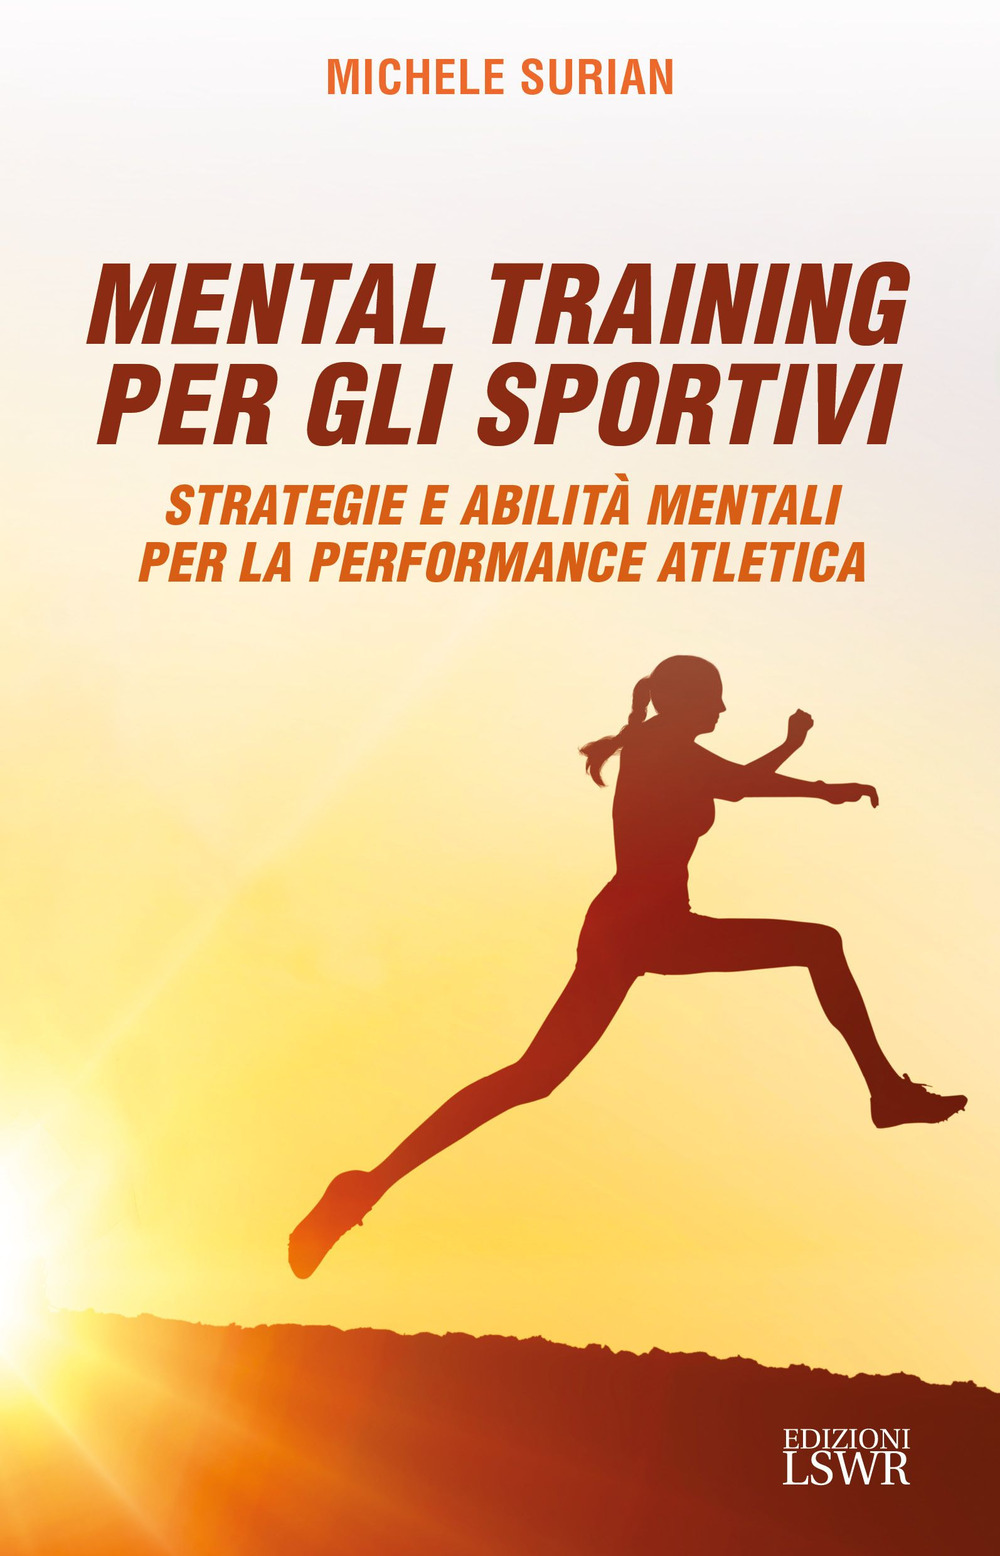 Mental training per gli sportivi. Strategie e abilità mentali per la performance atletica